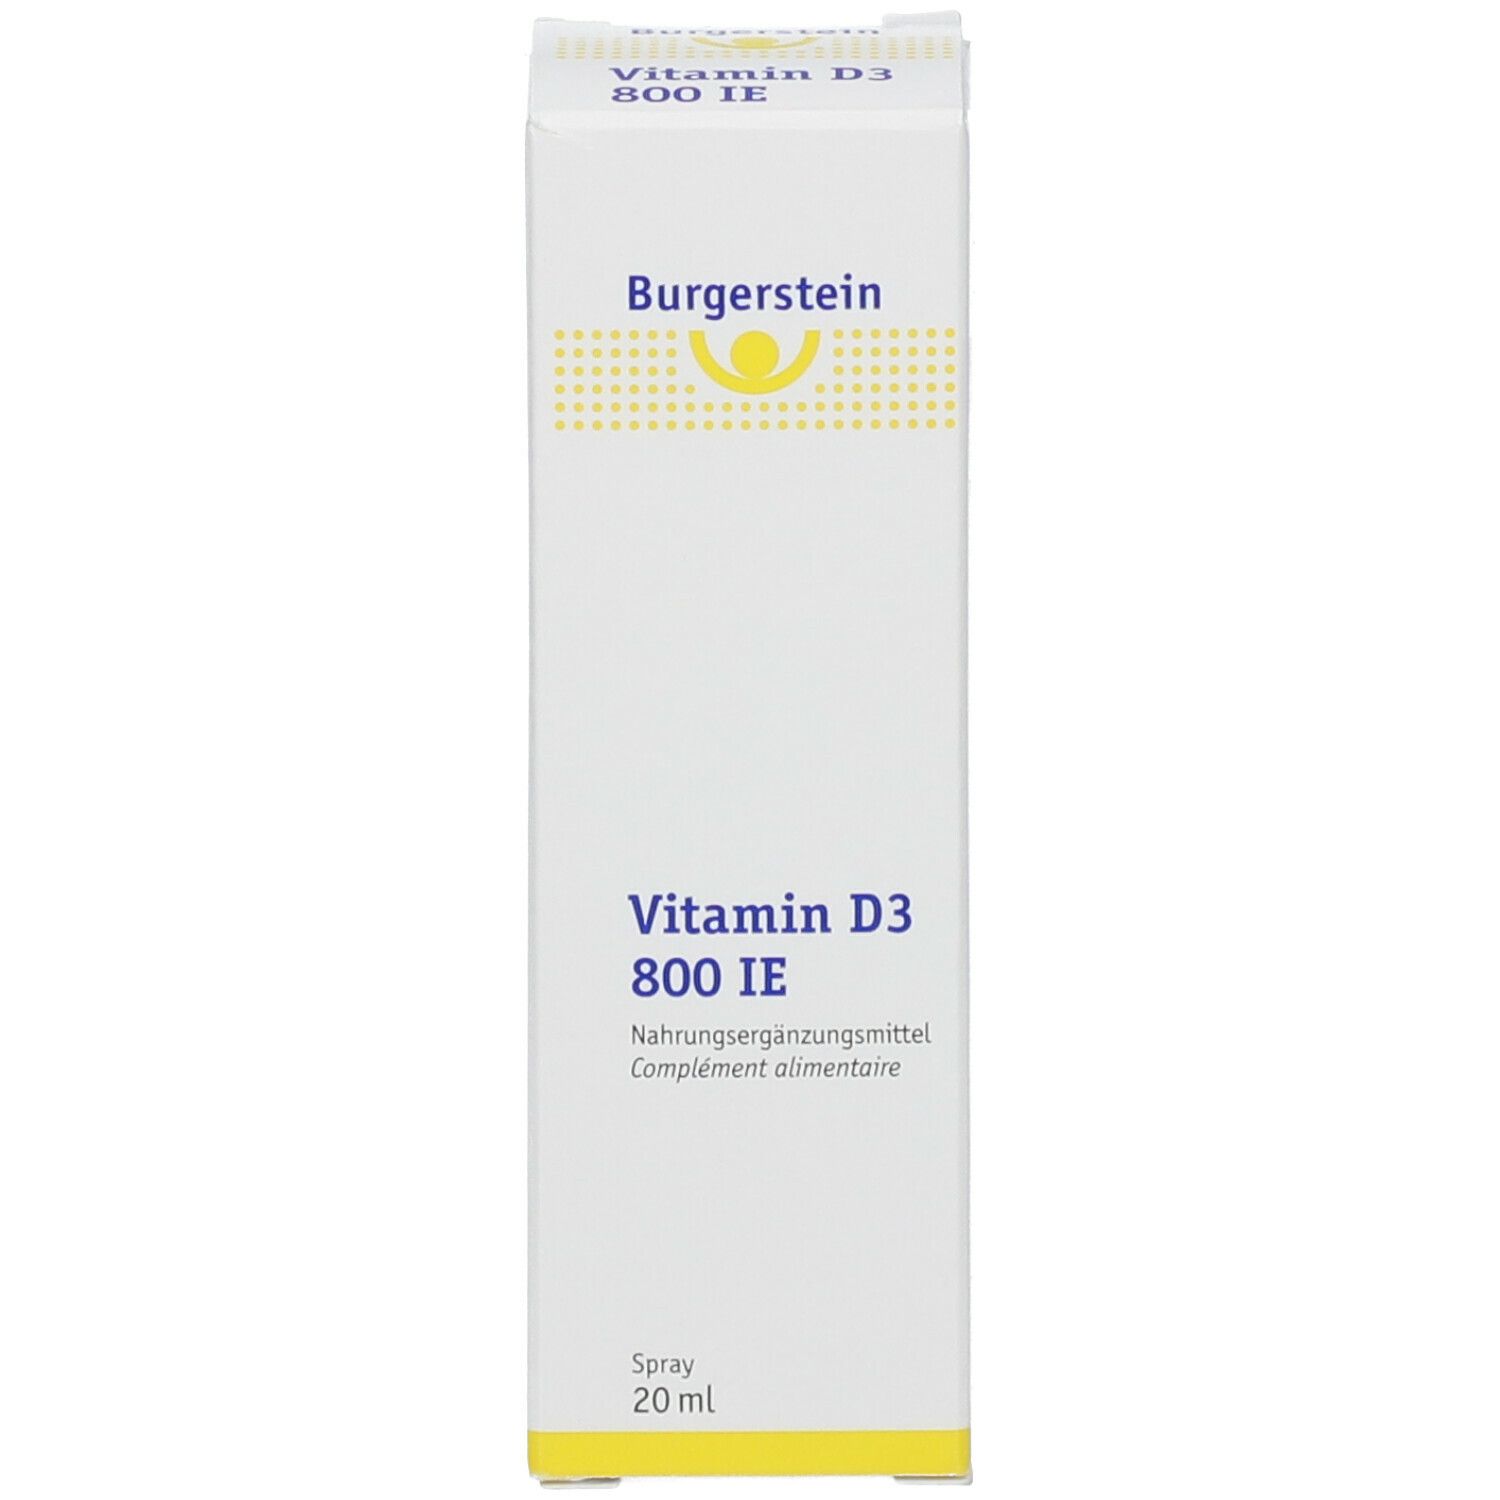 Burgerstein Vitamin D3 800 IE